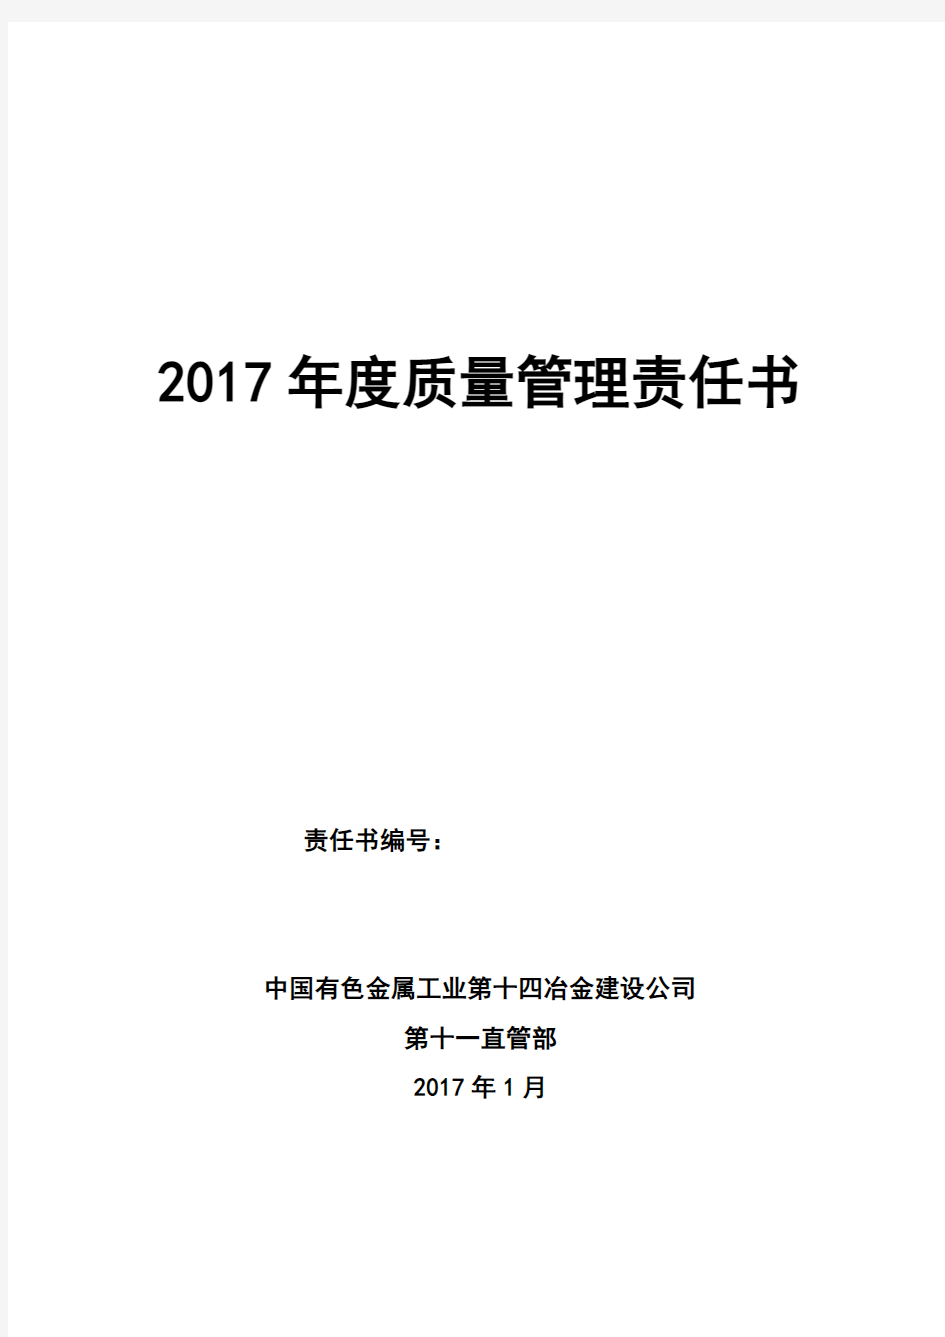 2017质量管理责任书